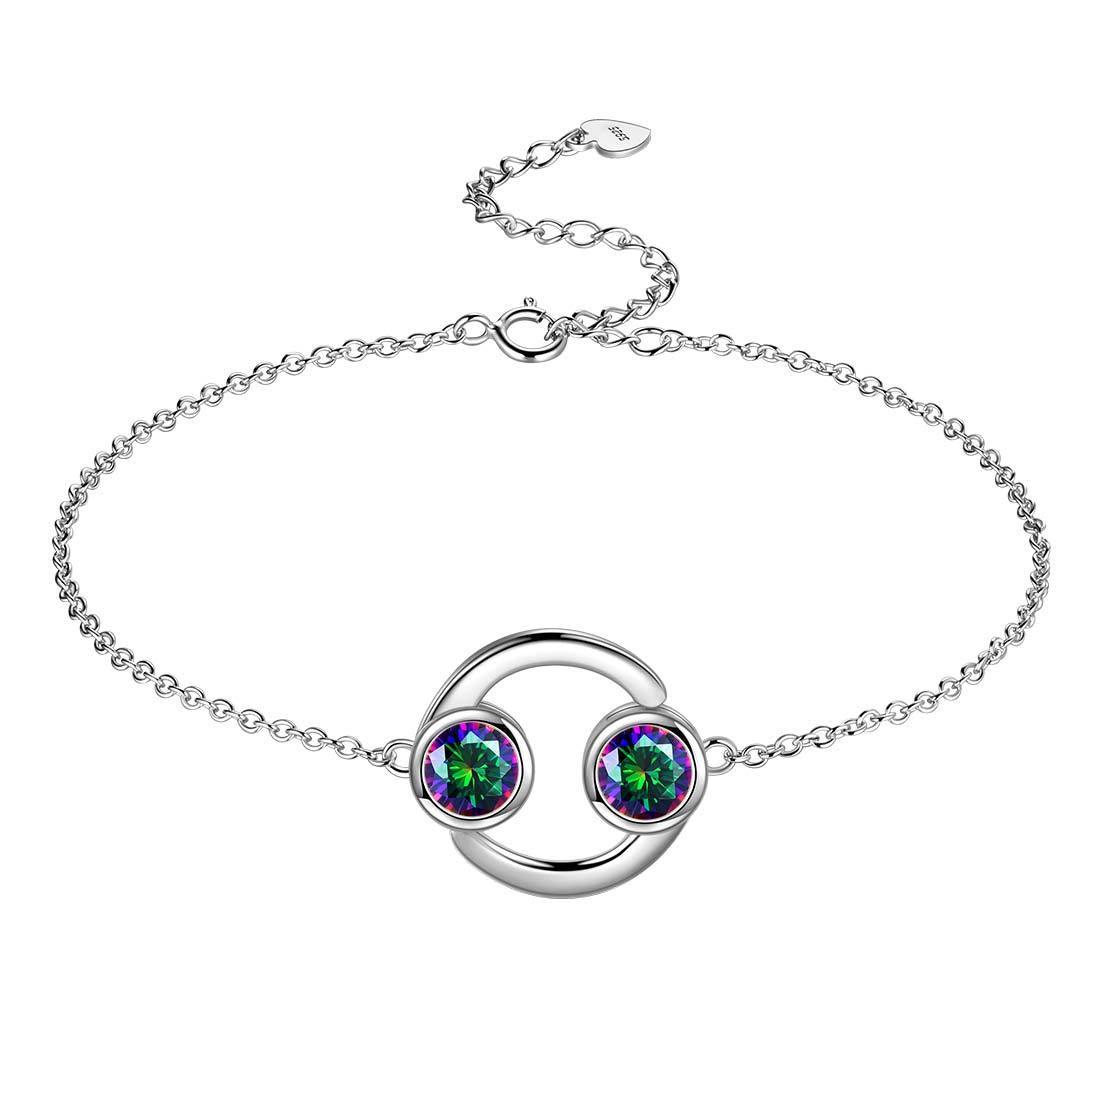 Cancer Bracelet Sterling Silver Mystic Rainbow Topaz Aurora Tears Jewelry